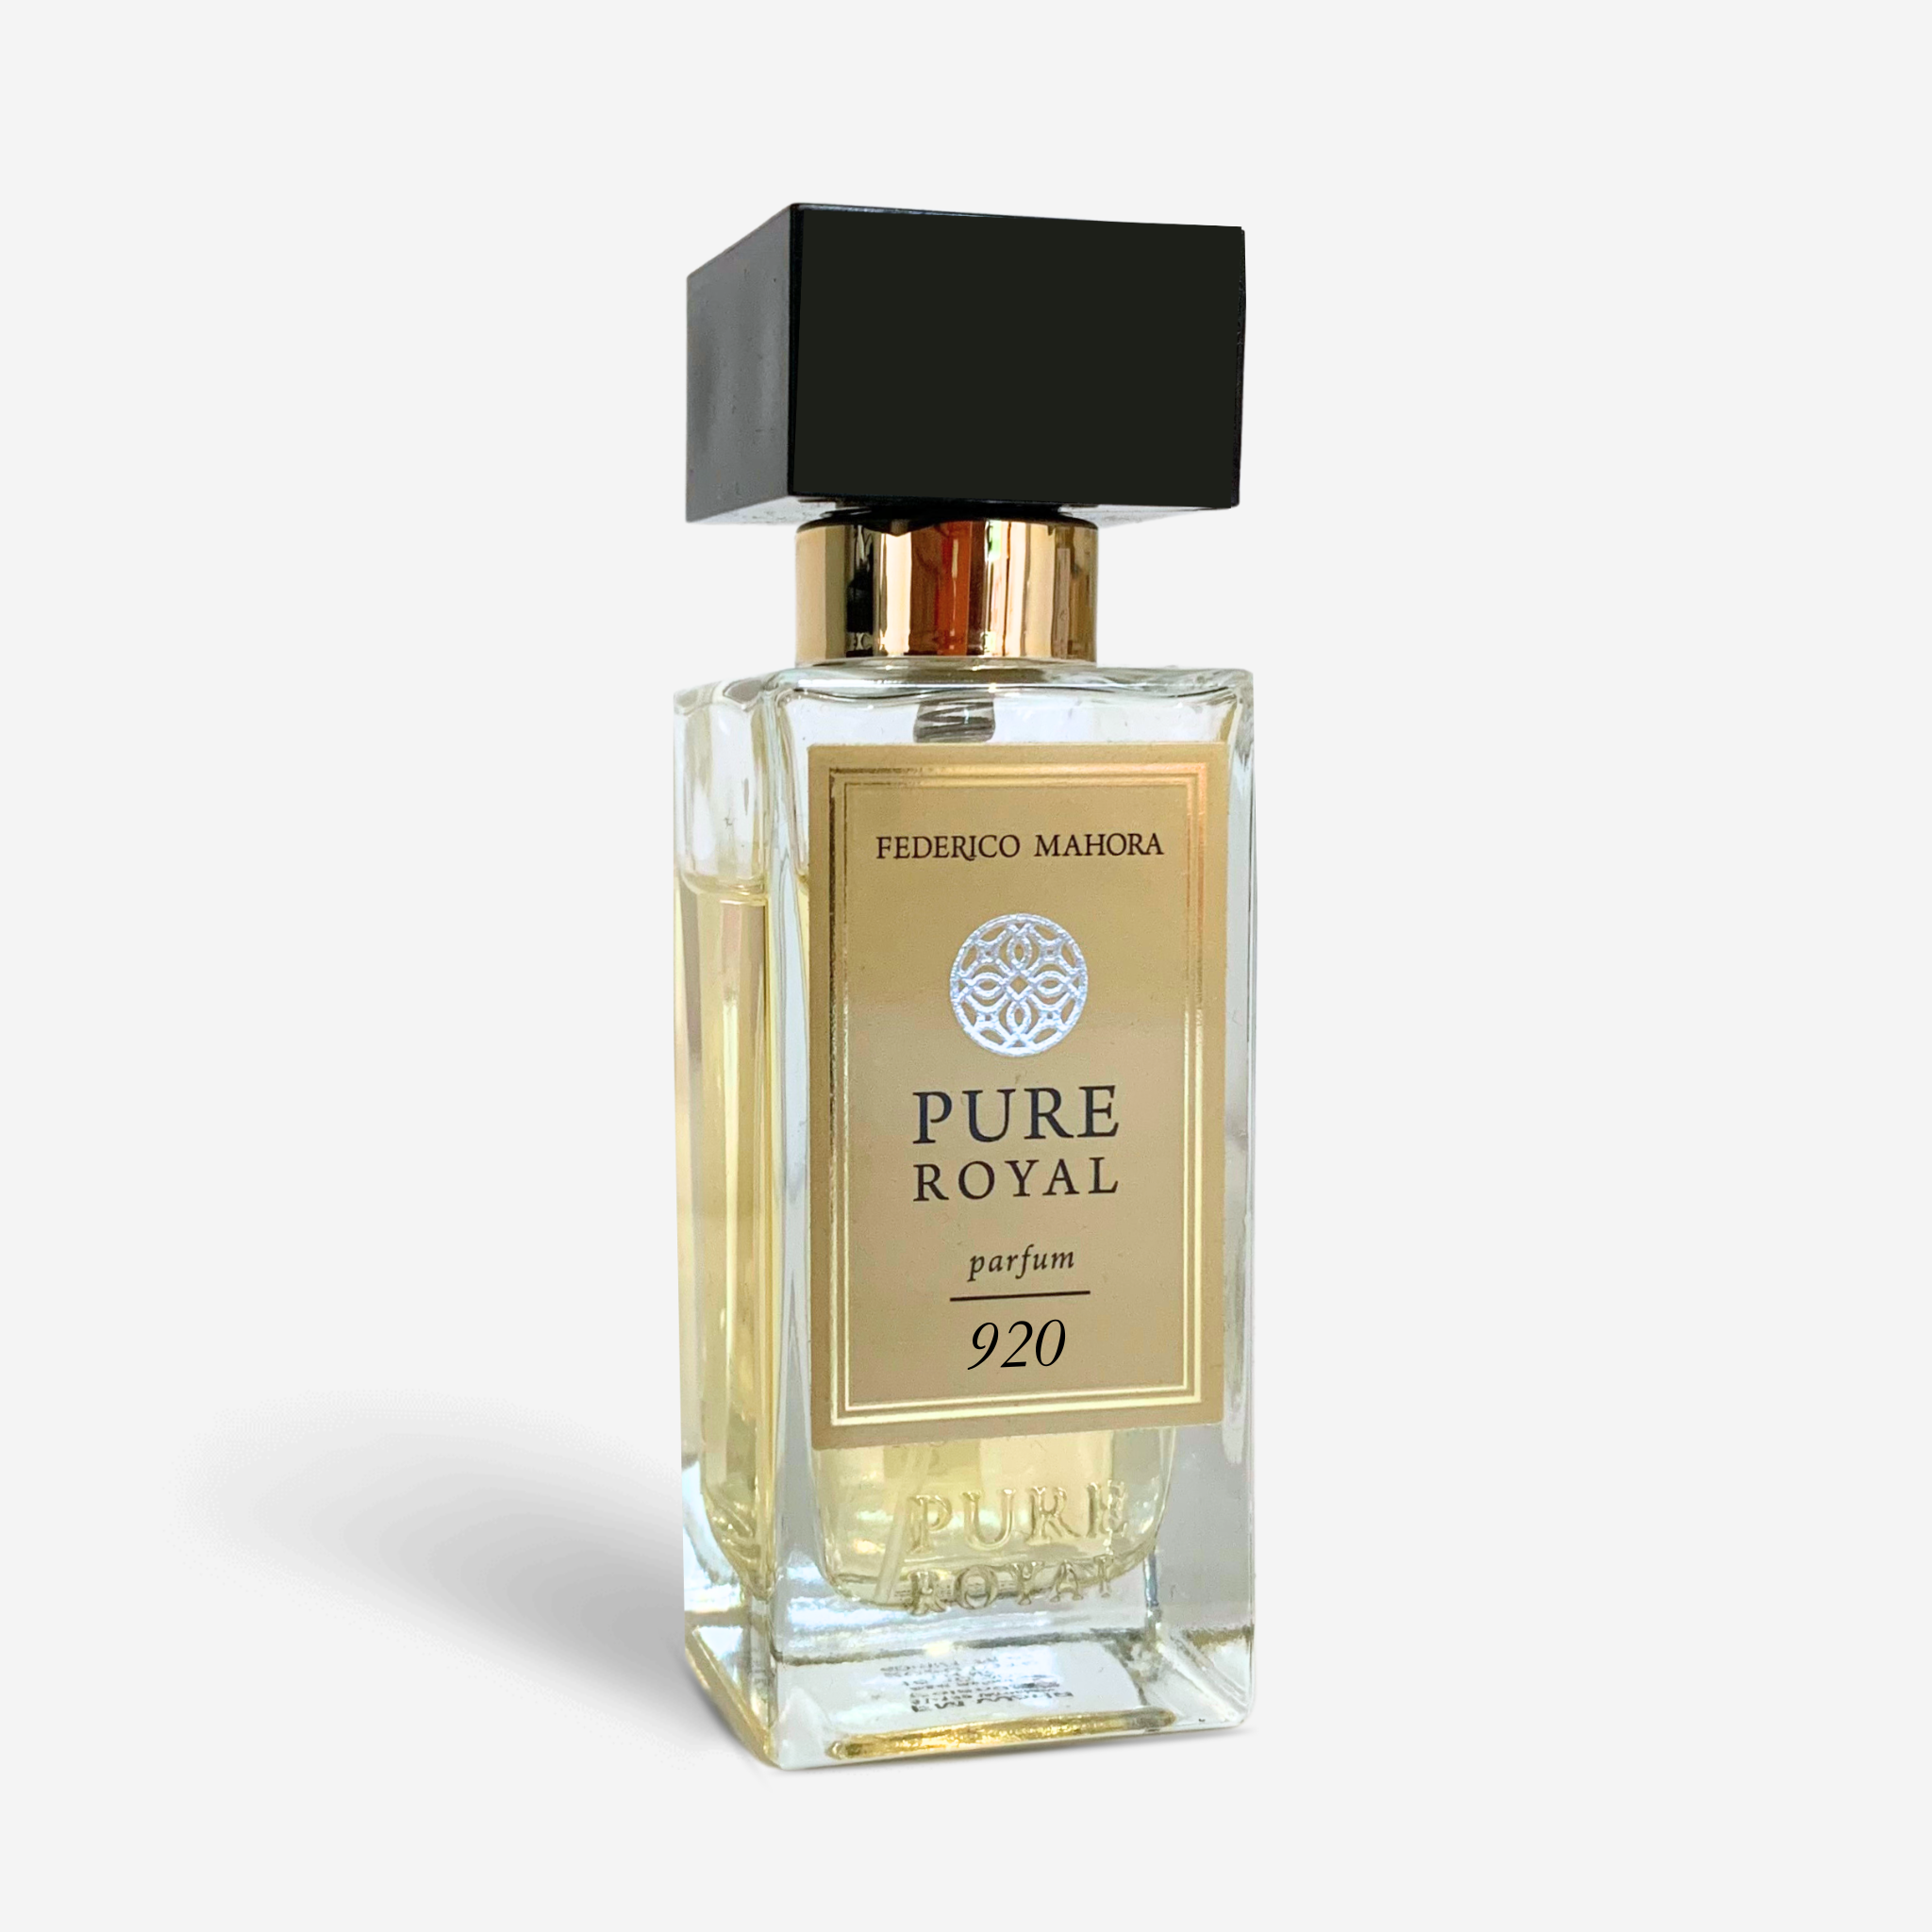 FM Pure Royal Parfum 920